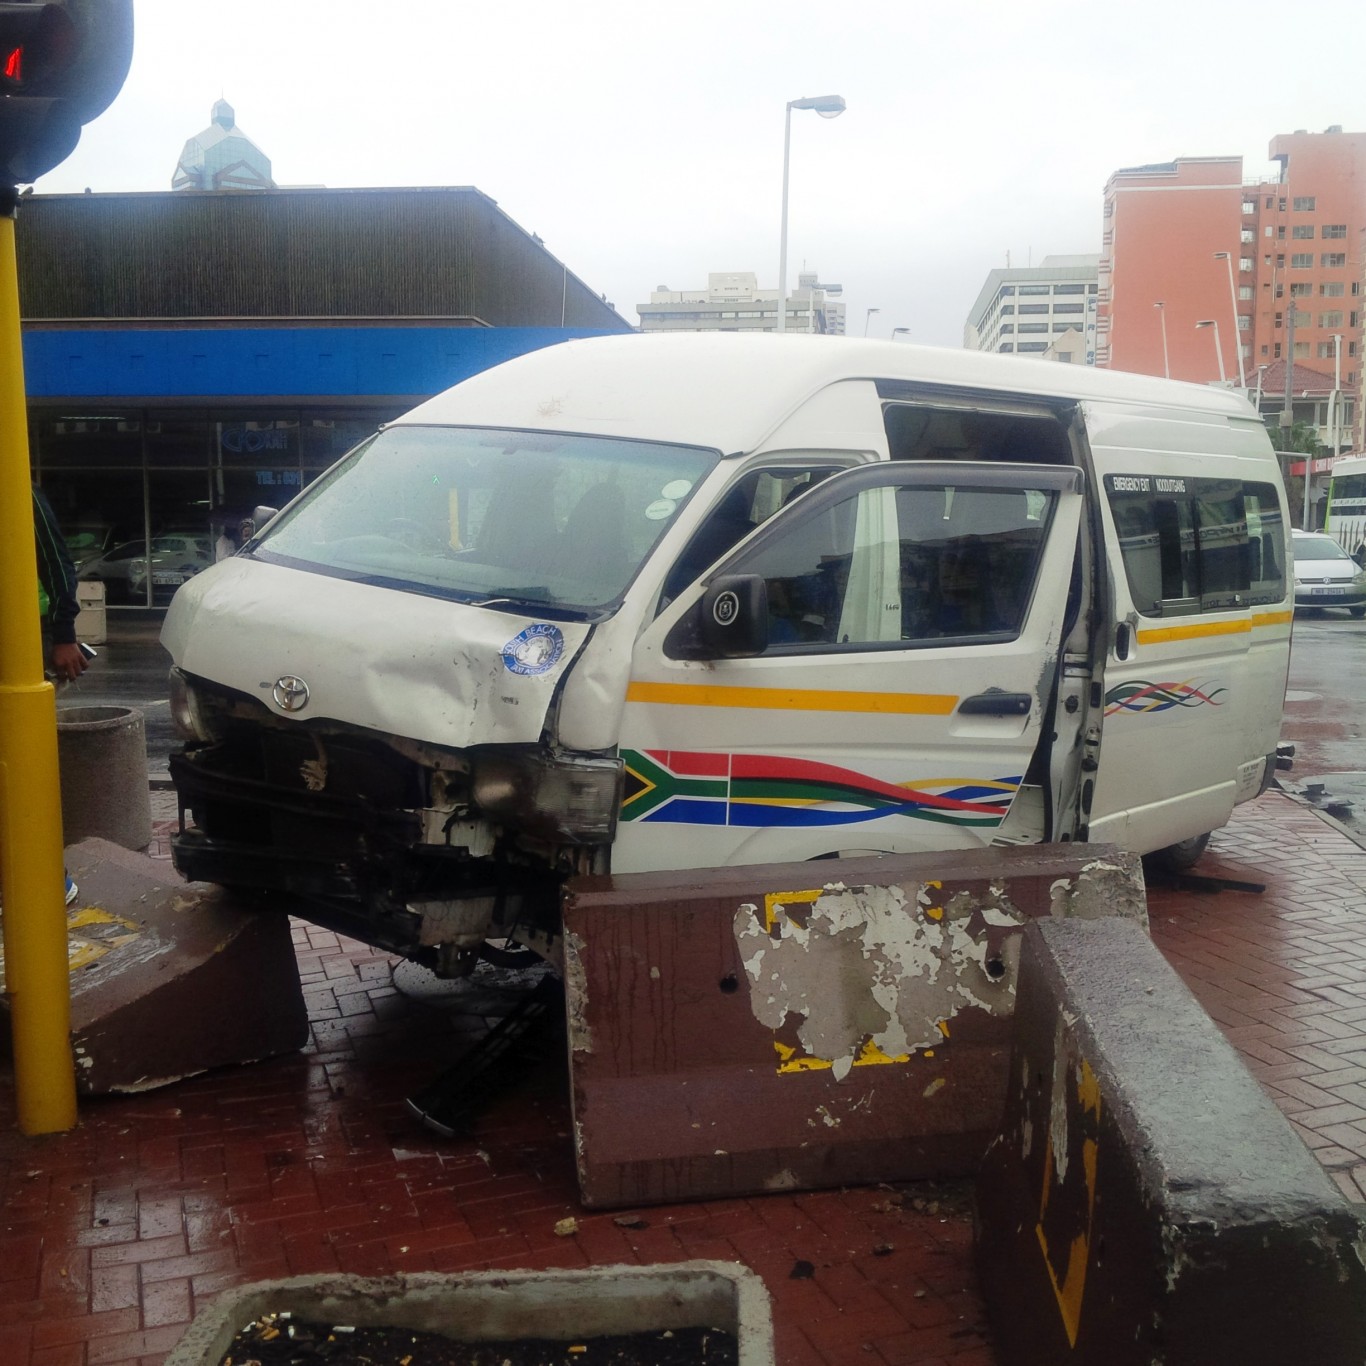 7 Hurt in Durban CBD crash